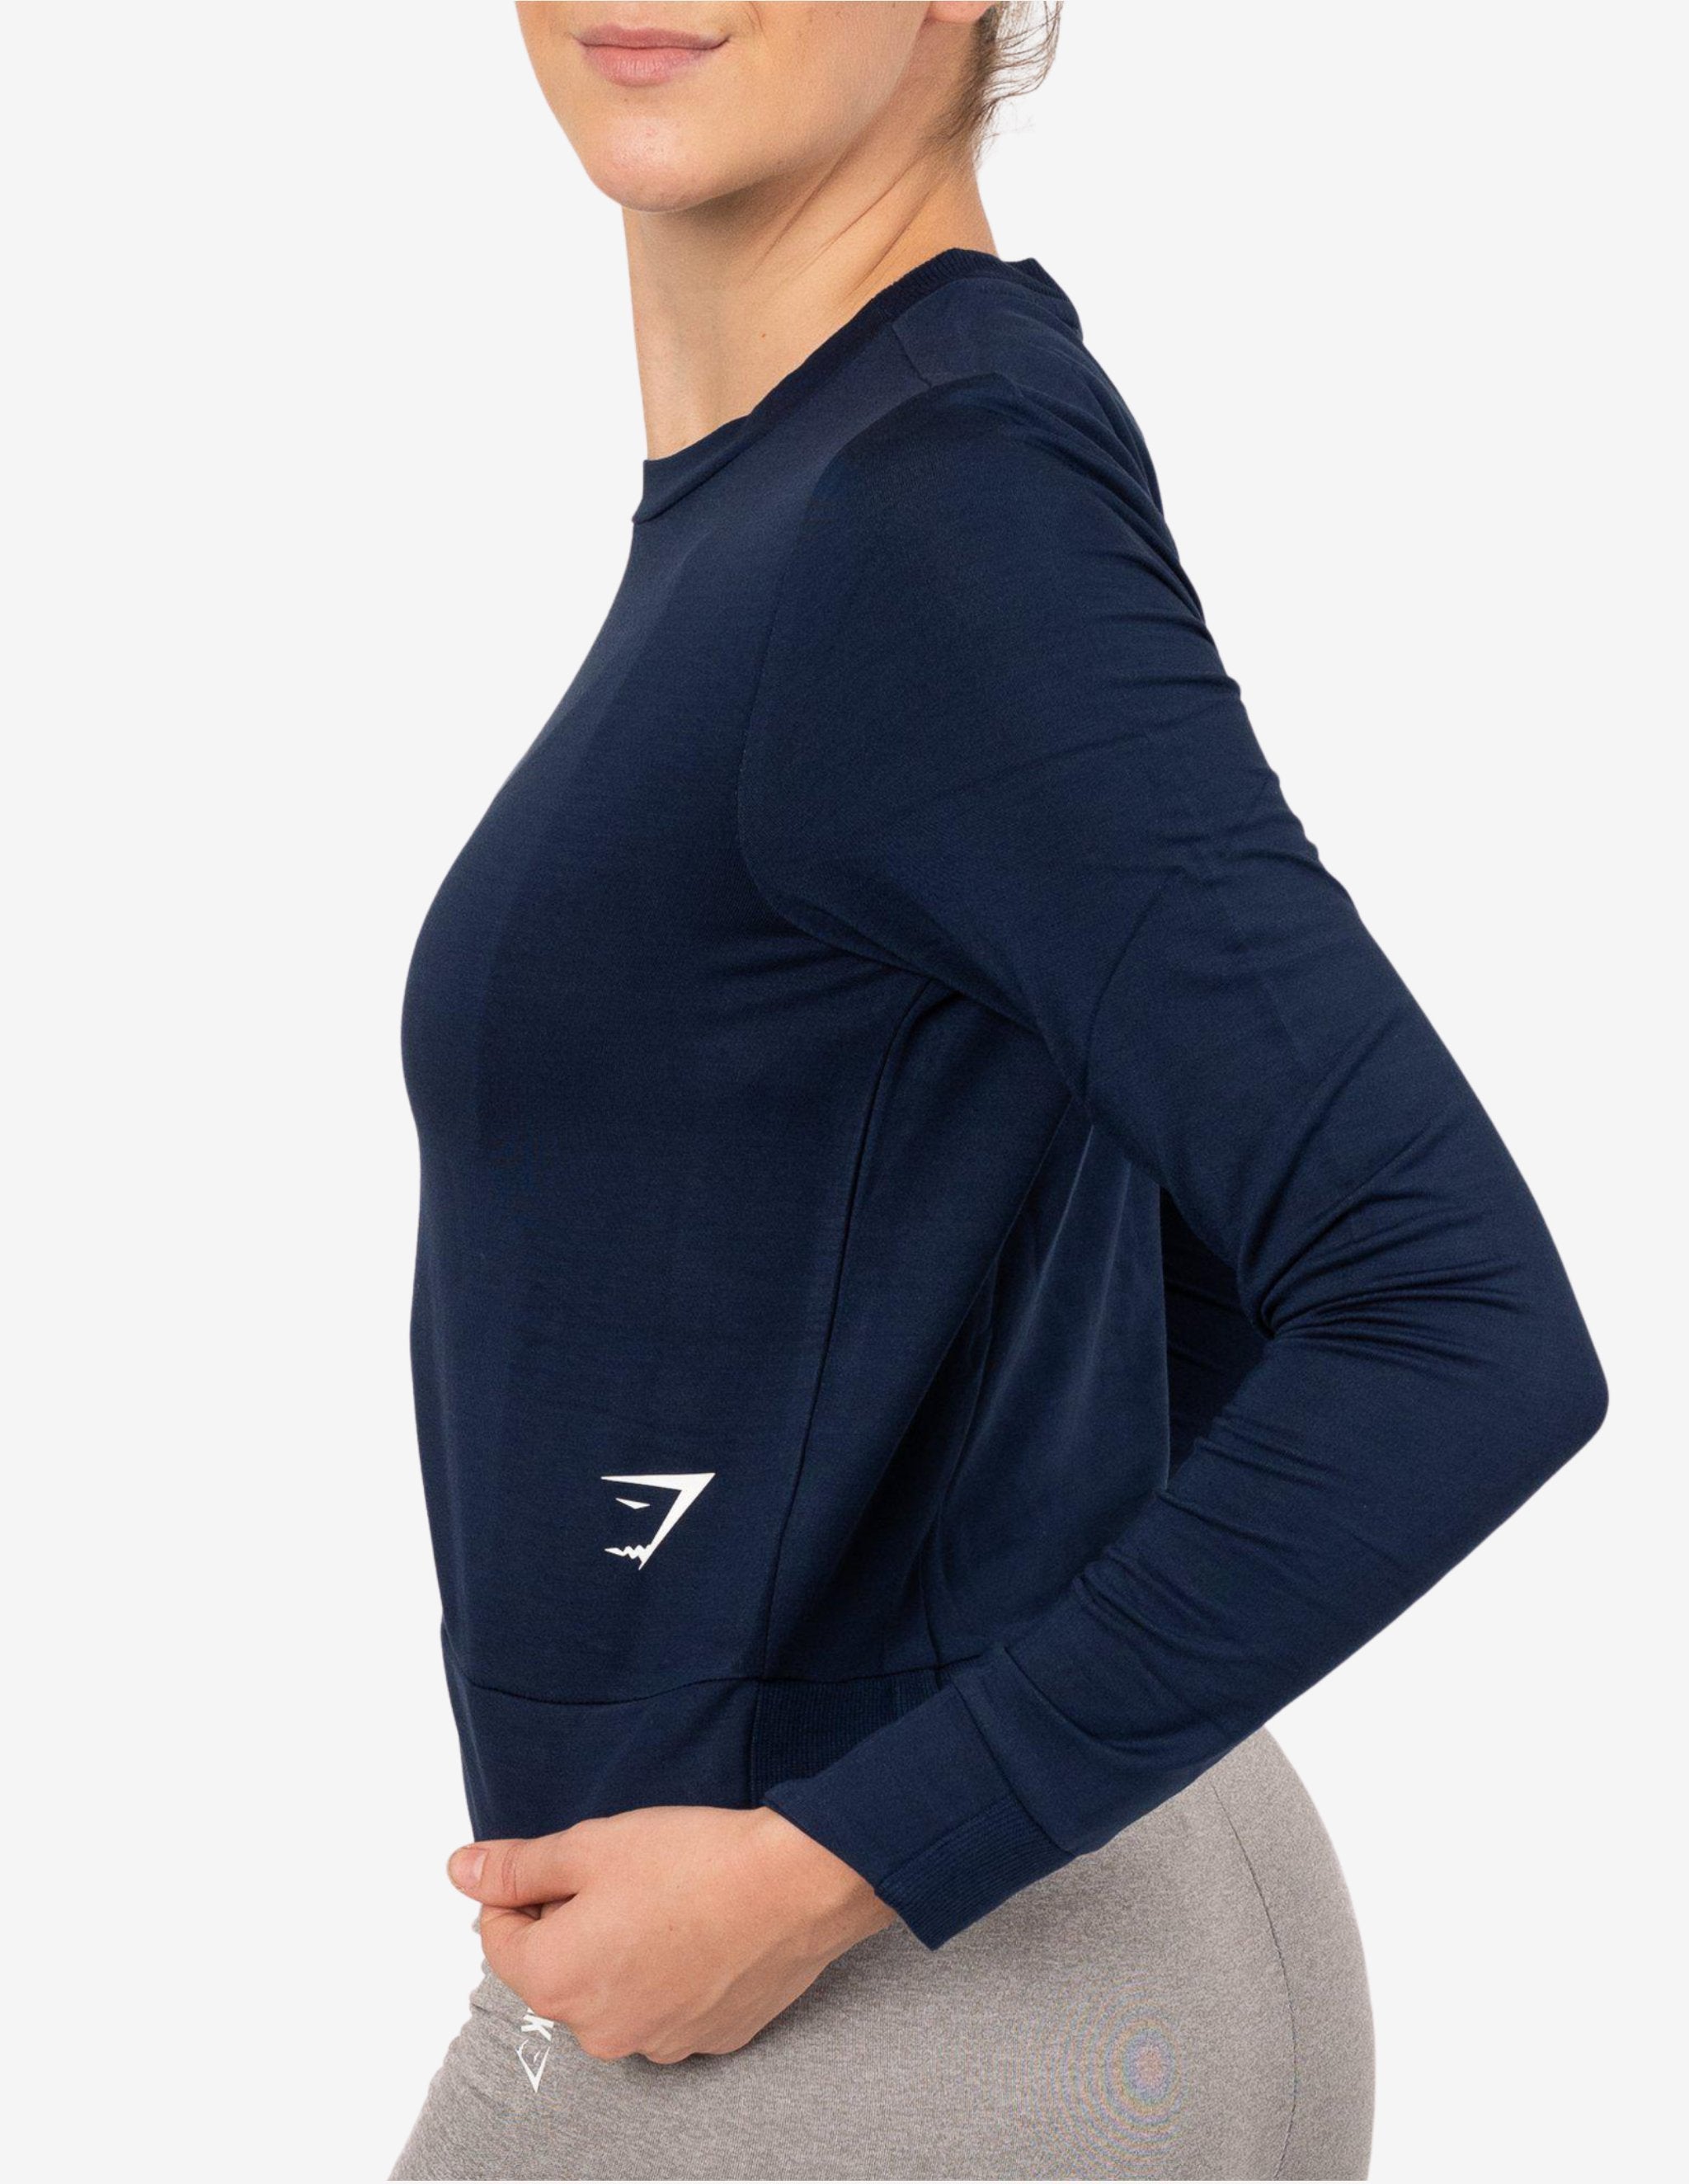 Essential Sweater Sapphire Blue-Hoodie Woman-Gymshark-Guru Muscle